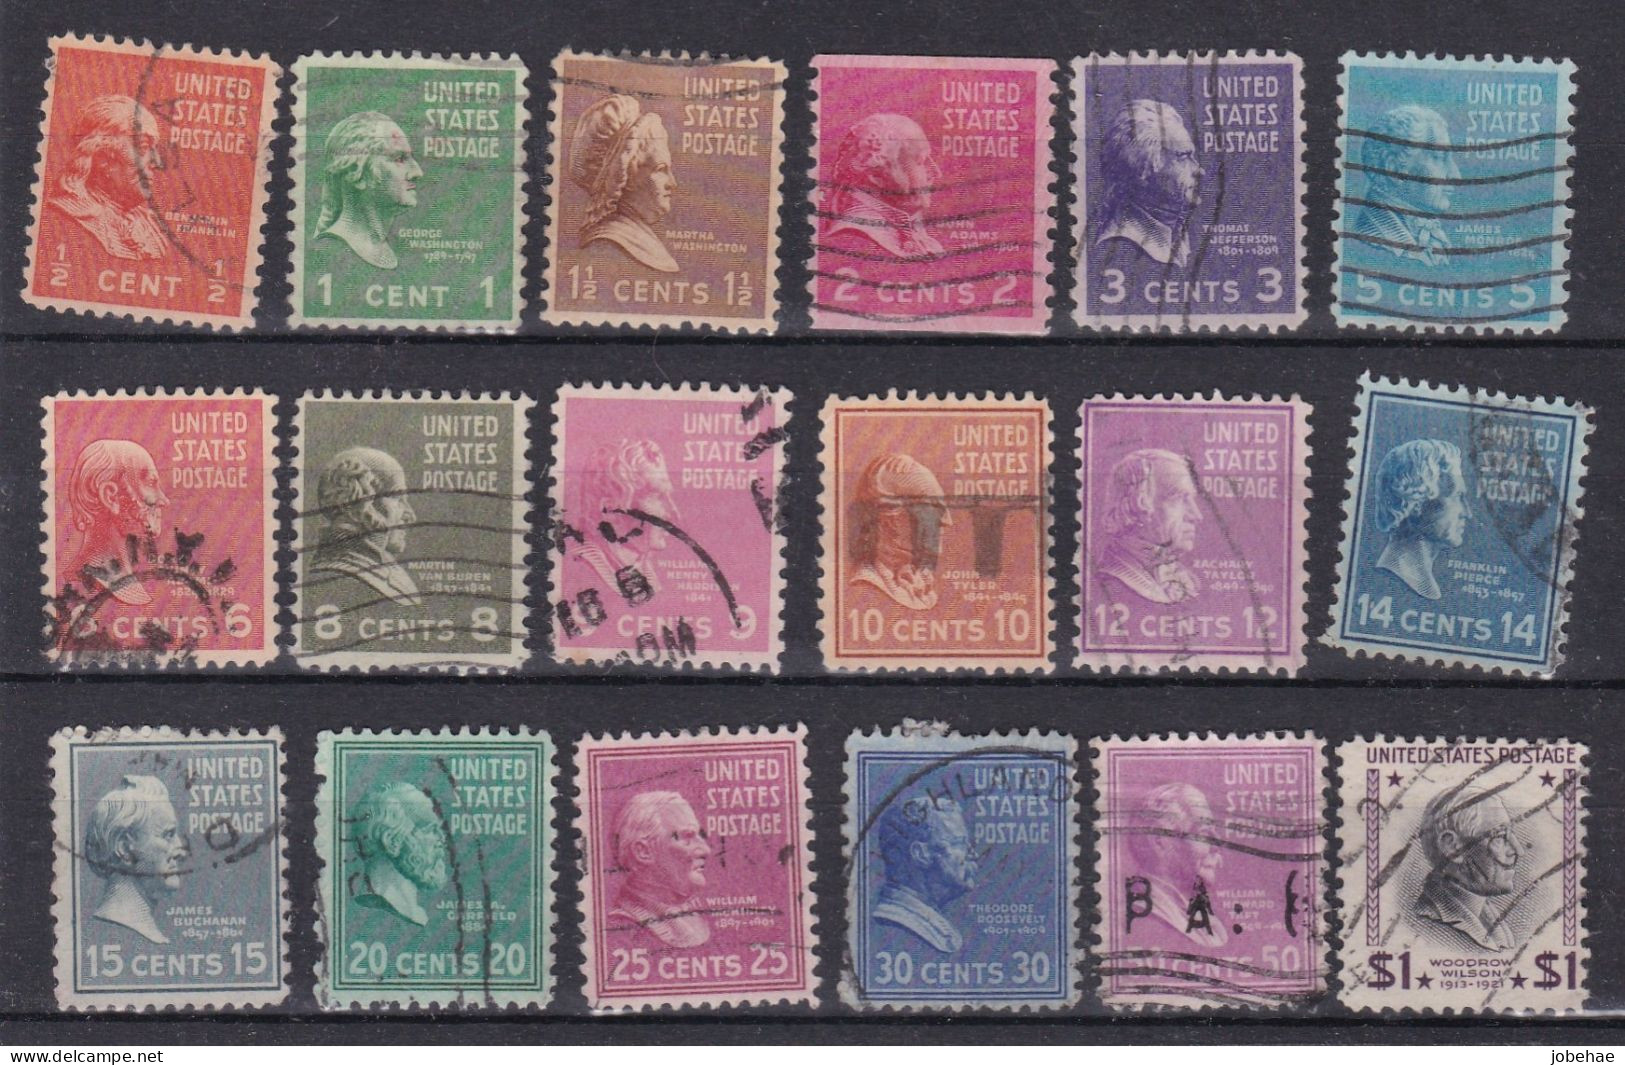 Etats-Unis D'Amerique YT° 368-399 - Used Stamps